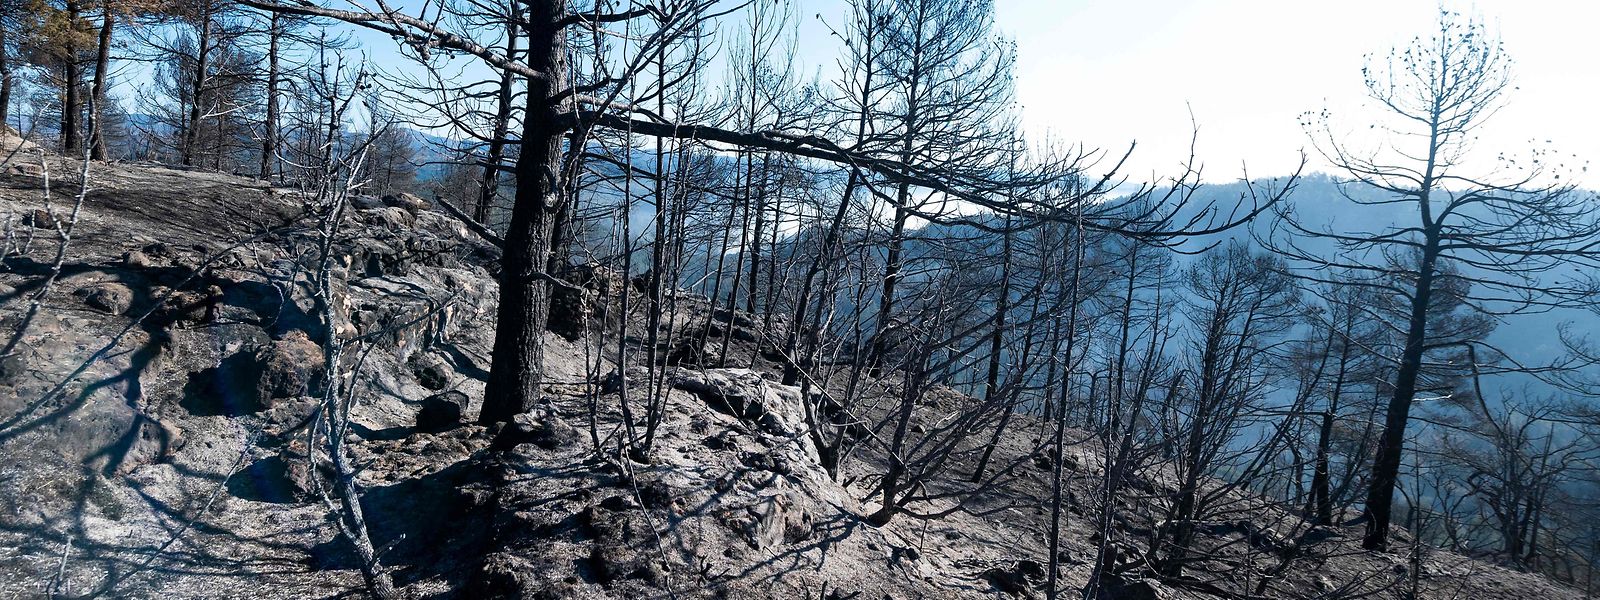 Die Ursache des Feuers blieb vorerst unbekannt. Die Behörden vermuten „eine falsch durchgeführte landwirtschaftliche Verbrennung“.